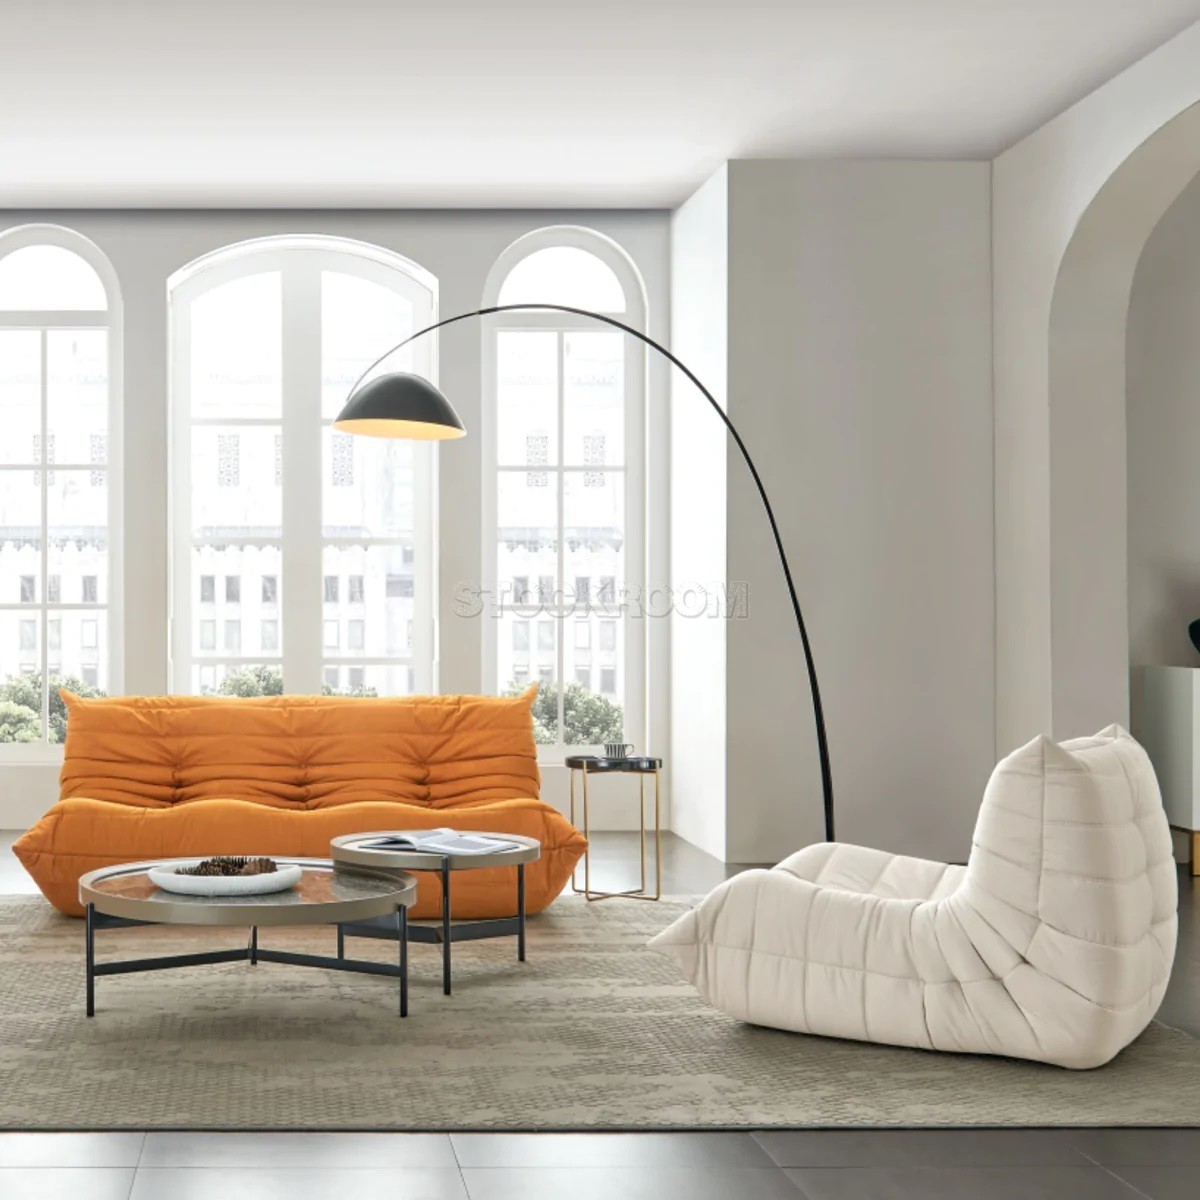 Lennox Caterpillar Style Velvet 2 Seater Sofa